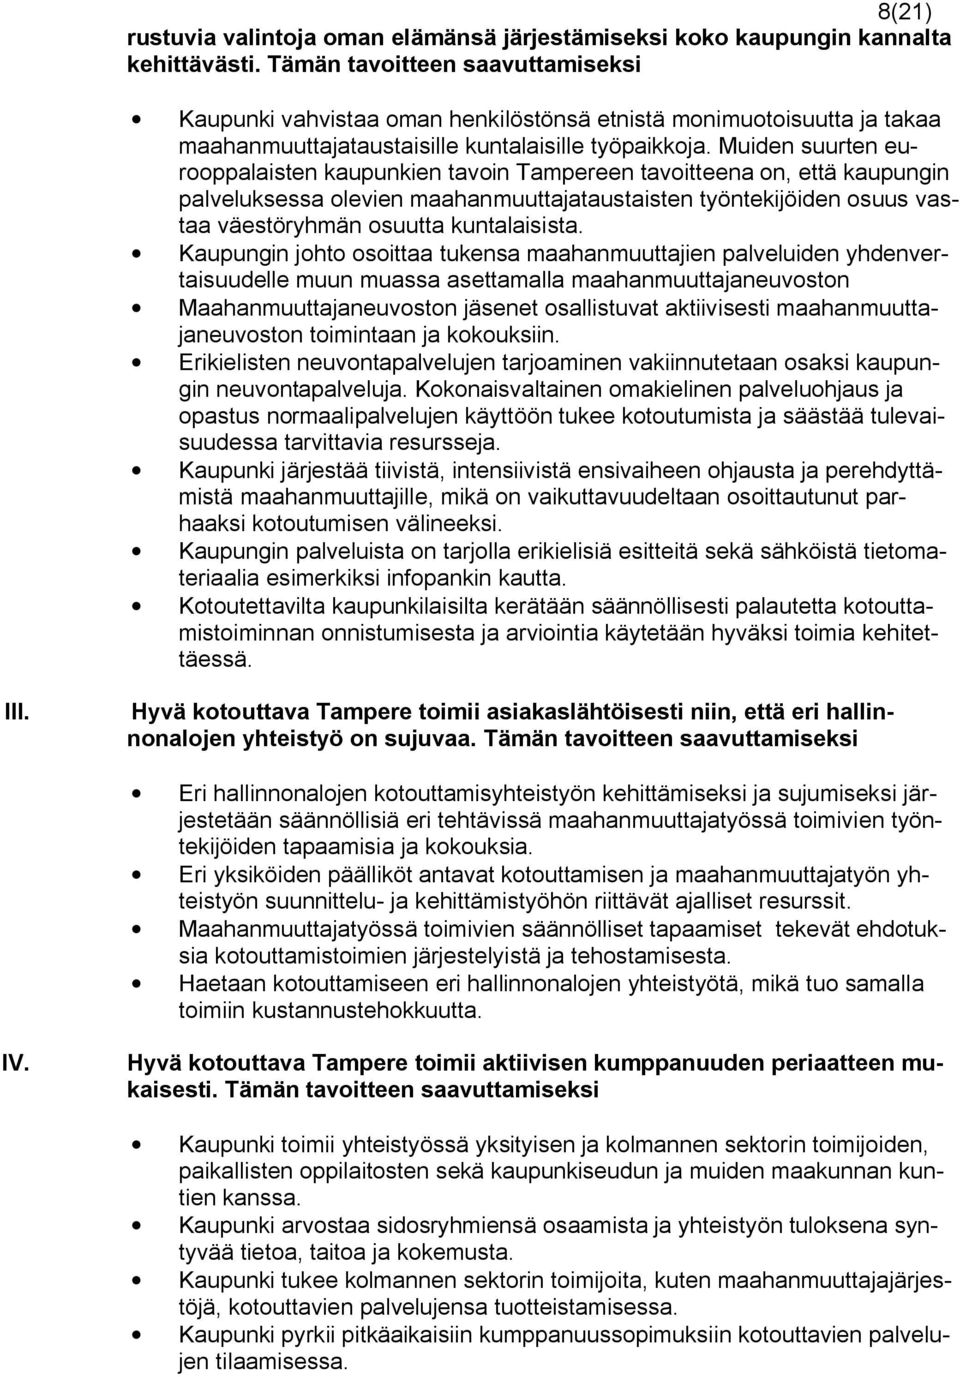 Muiden suurten eurooppalaisten kaupunkien tavoin Tampereen tavoitteena on, että kaupungin palveluksessa olevien maahanmuuttajataustaisten työntekijöiden osuus vastaa väestöryhmän osuutta